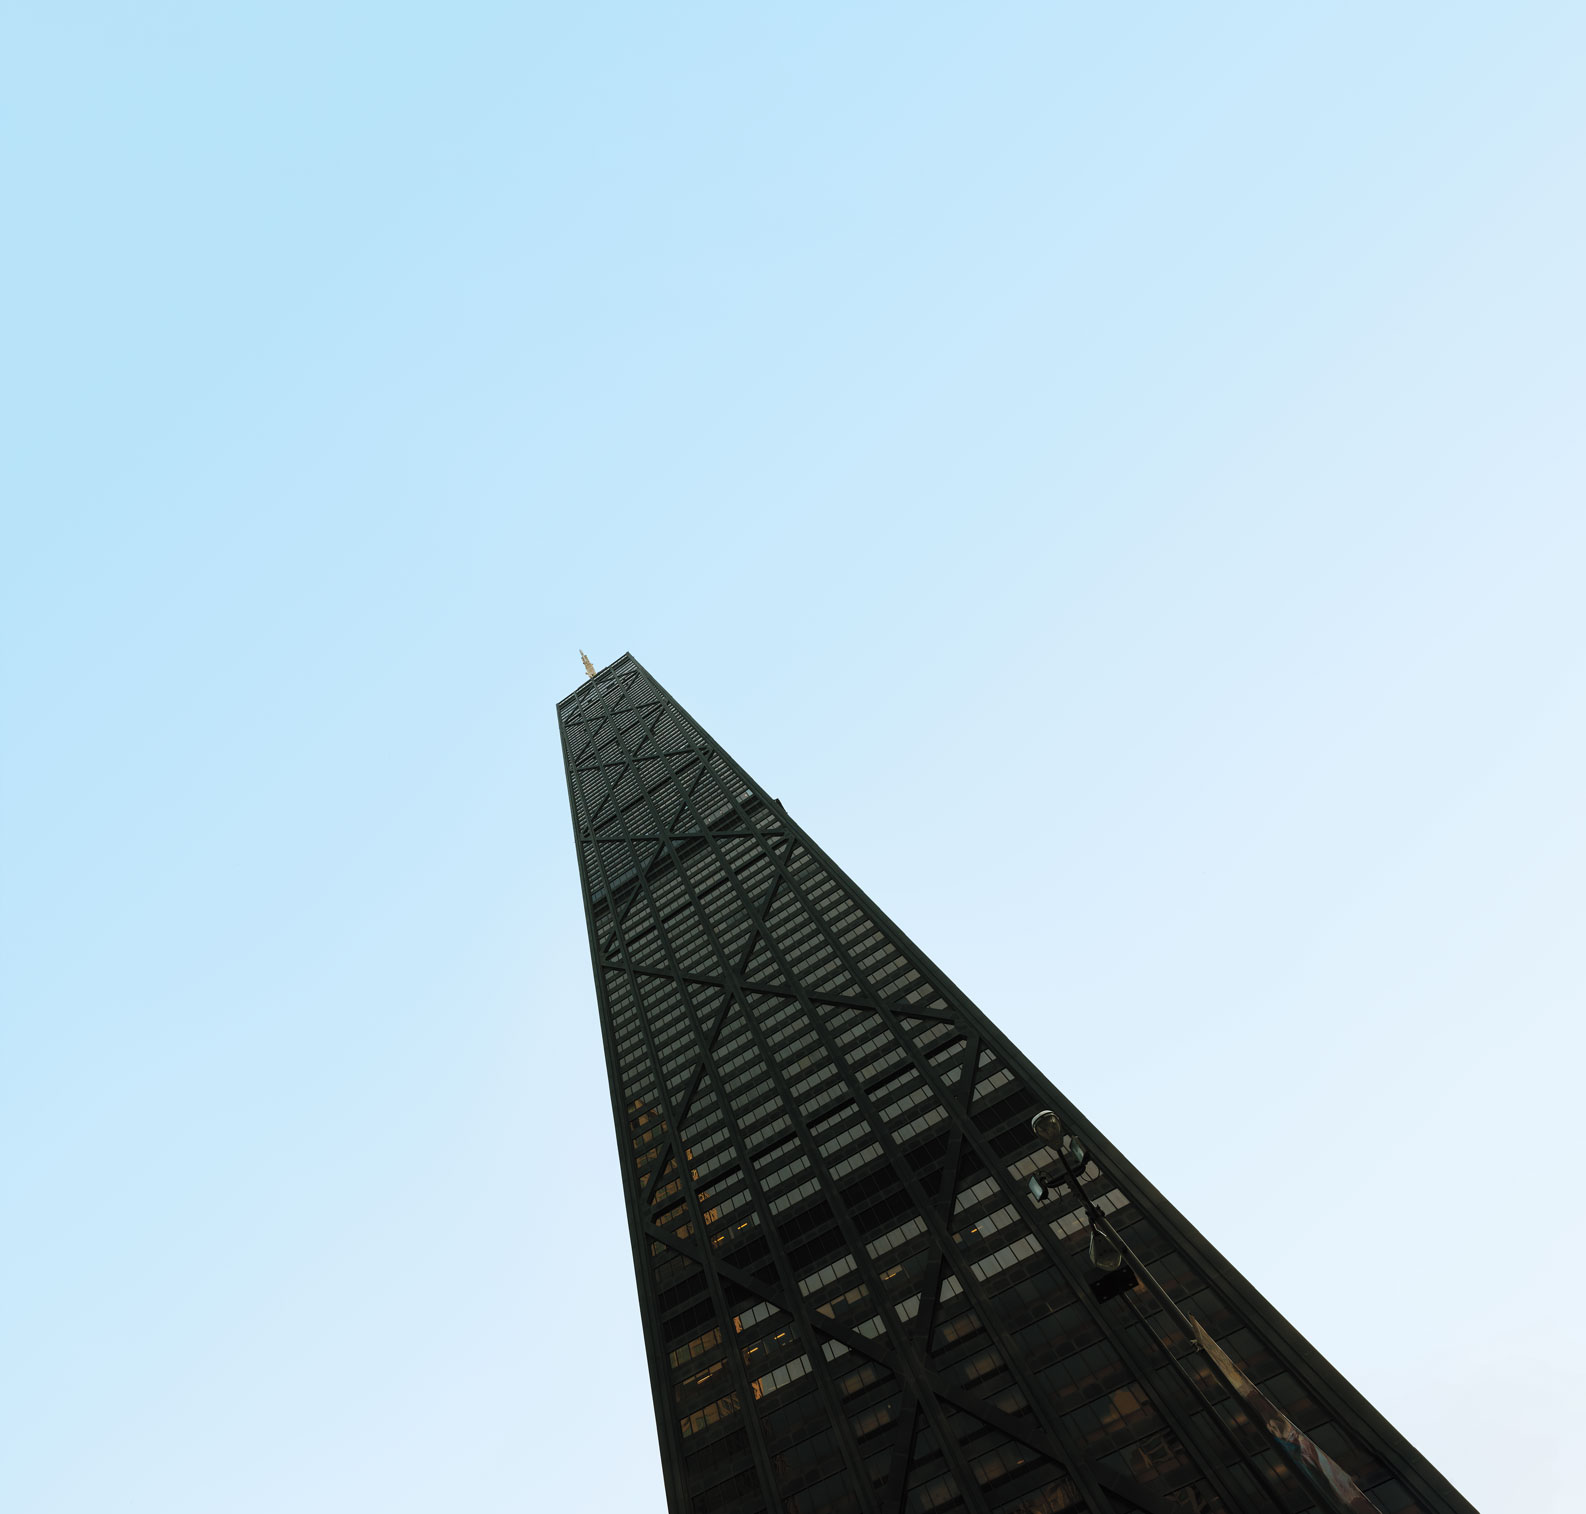 A black skyscraper against a blue sky.